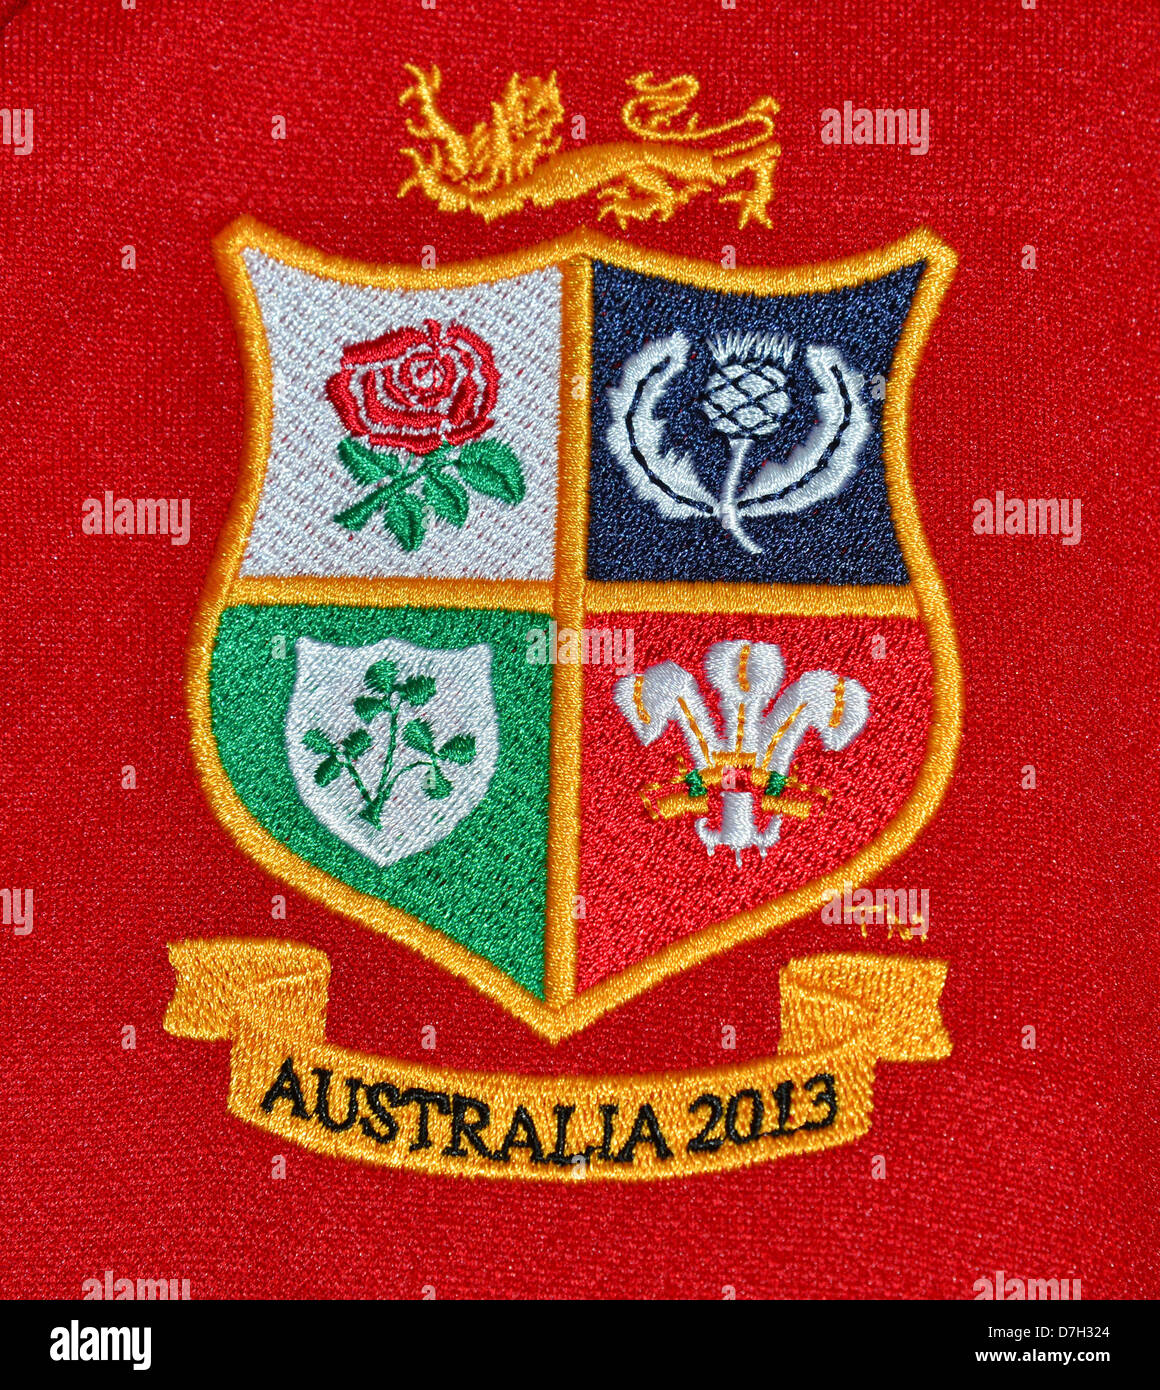 Australia 2013 British & Irish Lions rugby logo Maglietta, Surrey, England, Regno Unito Foto Stock